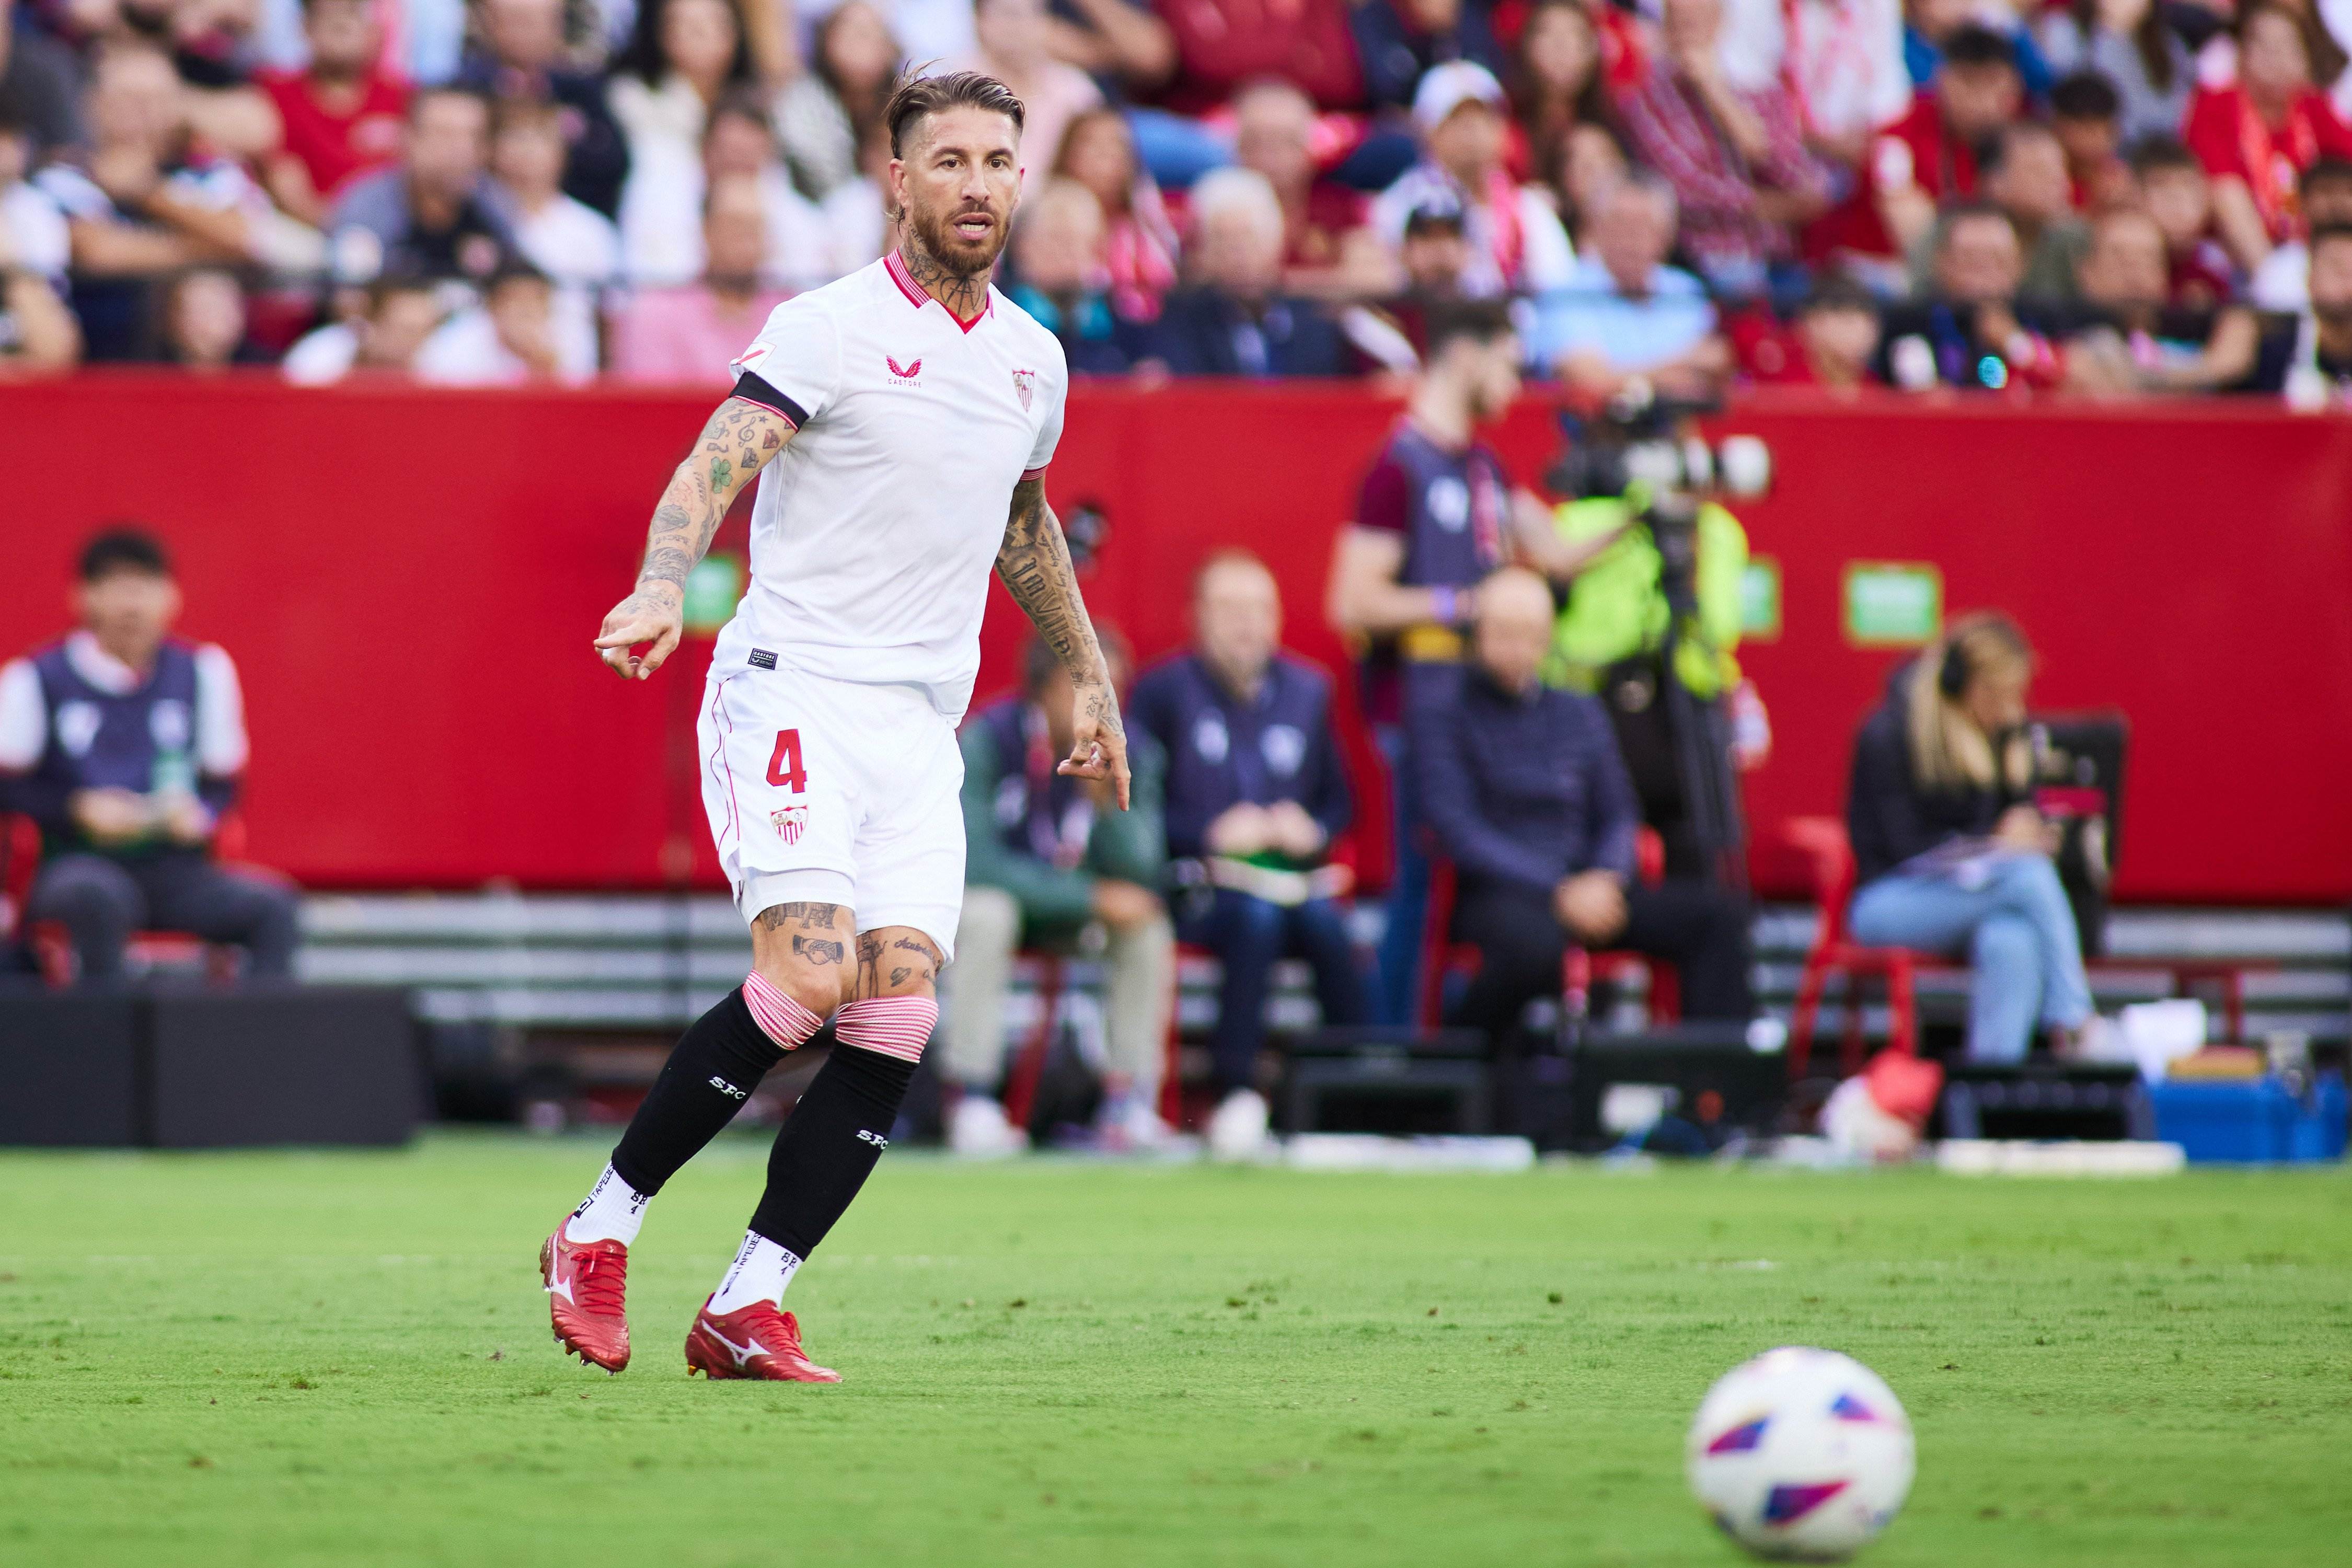 El Sevilla no renova el contracte de Sergio Ramos i 2 jugadors més se n'aniran lliures